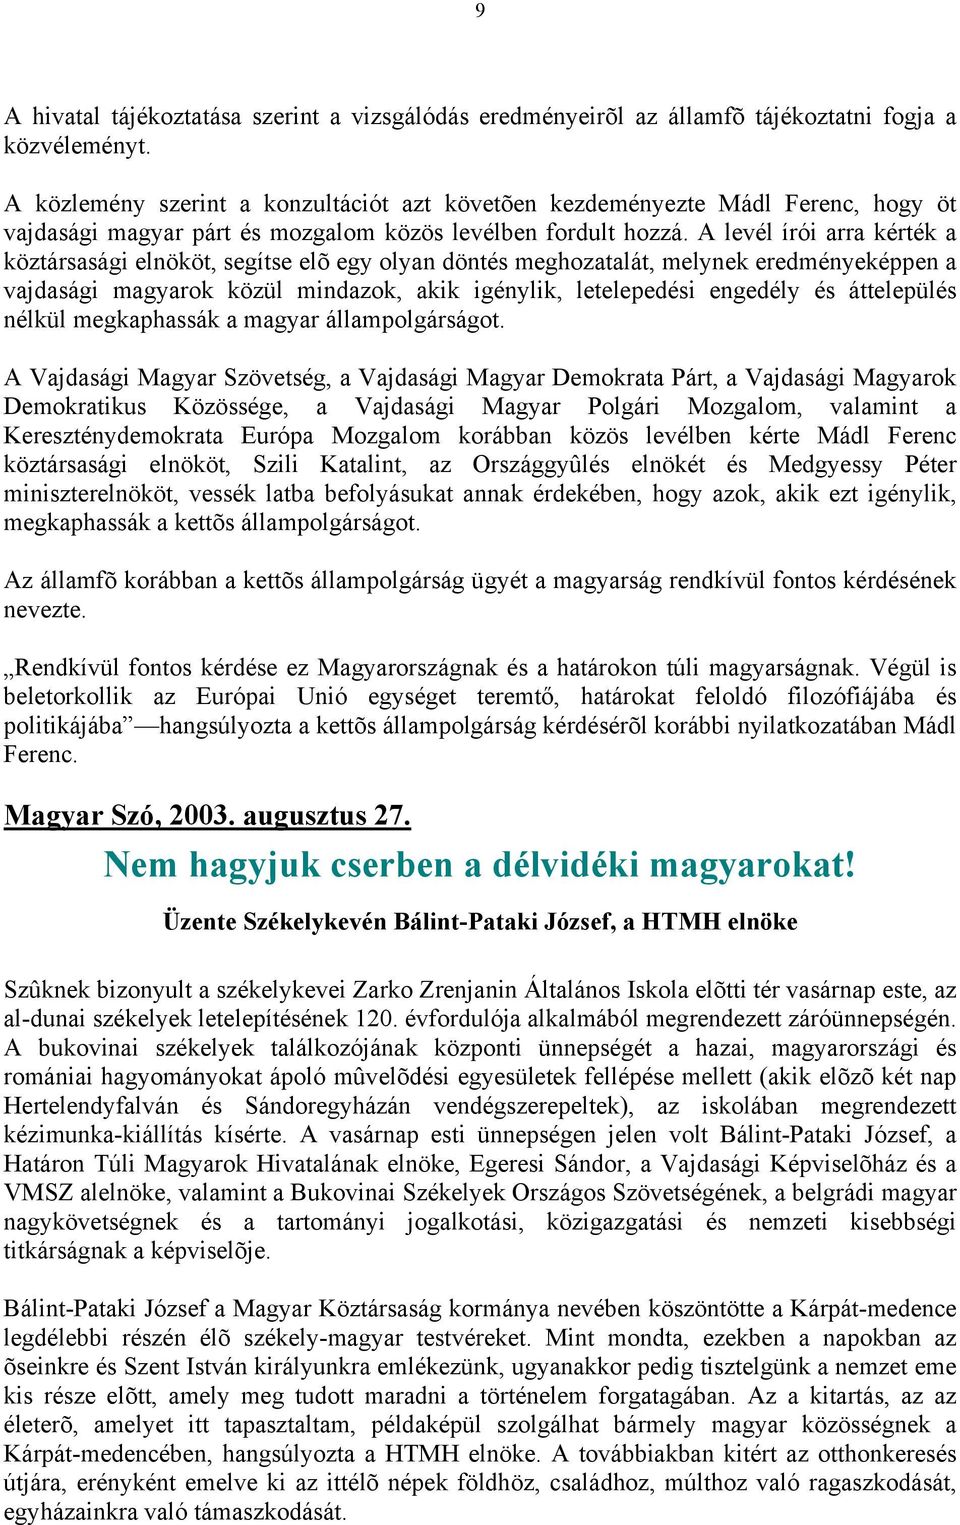 A levél írói arra kérték a köztársasági elnököt, segítse elõ egy olyan döntés meghozatalát, melynek eredményeképpen a vajdasági magyarok közül mindazok, akik igénylik, letelepedési engedély és